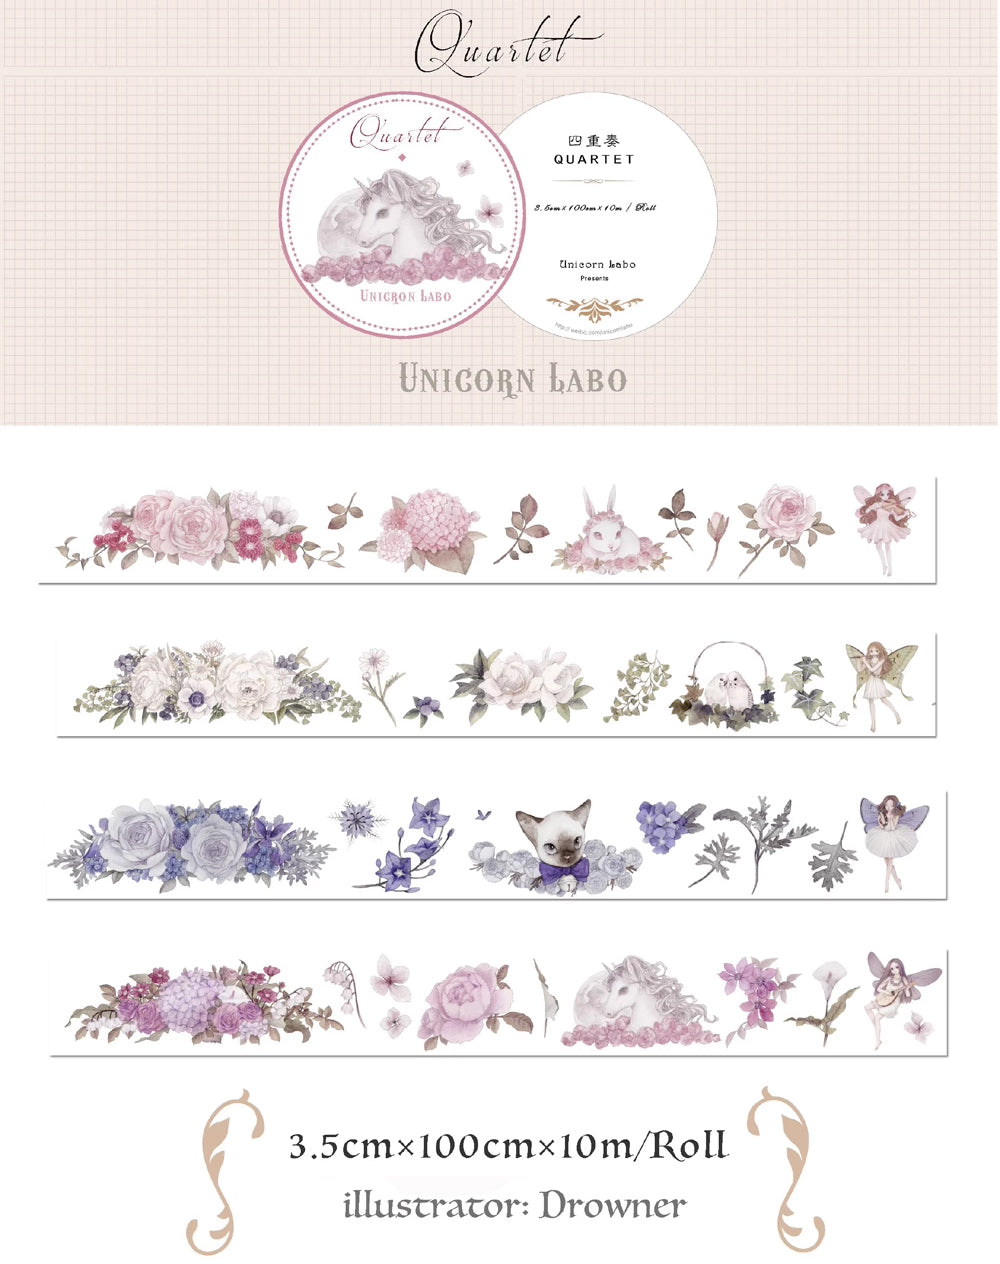 Unicorn Labo Washi Tape: Quartet